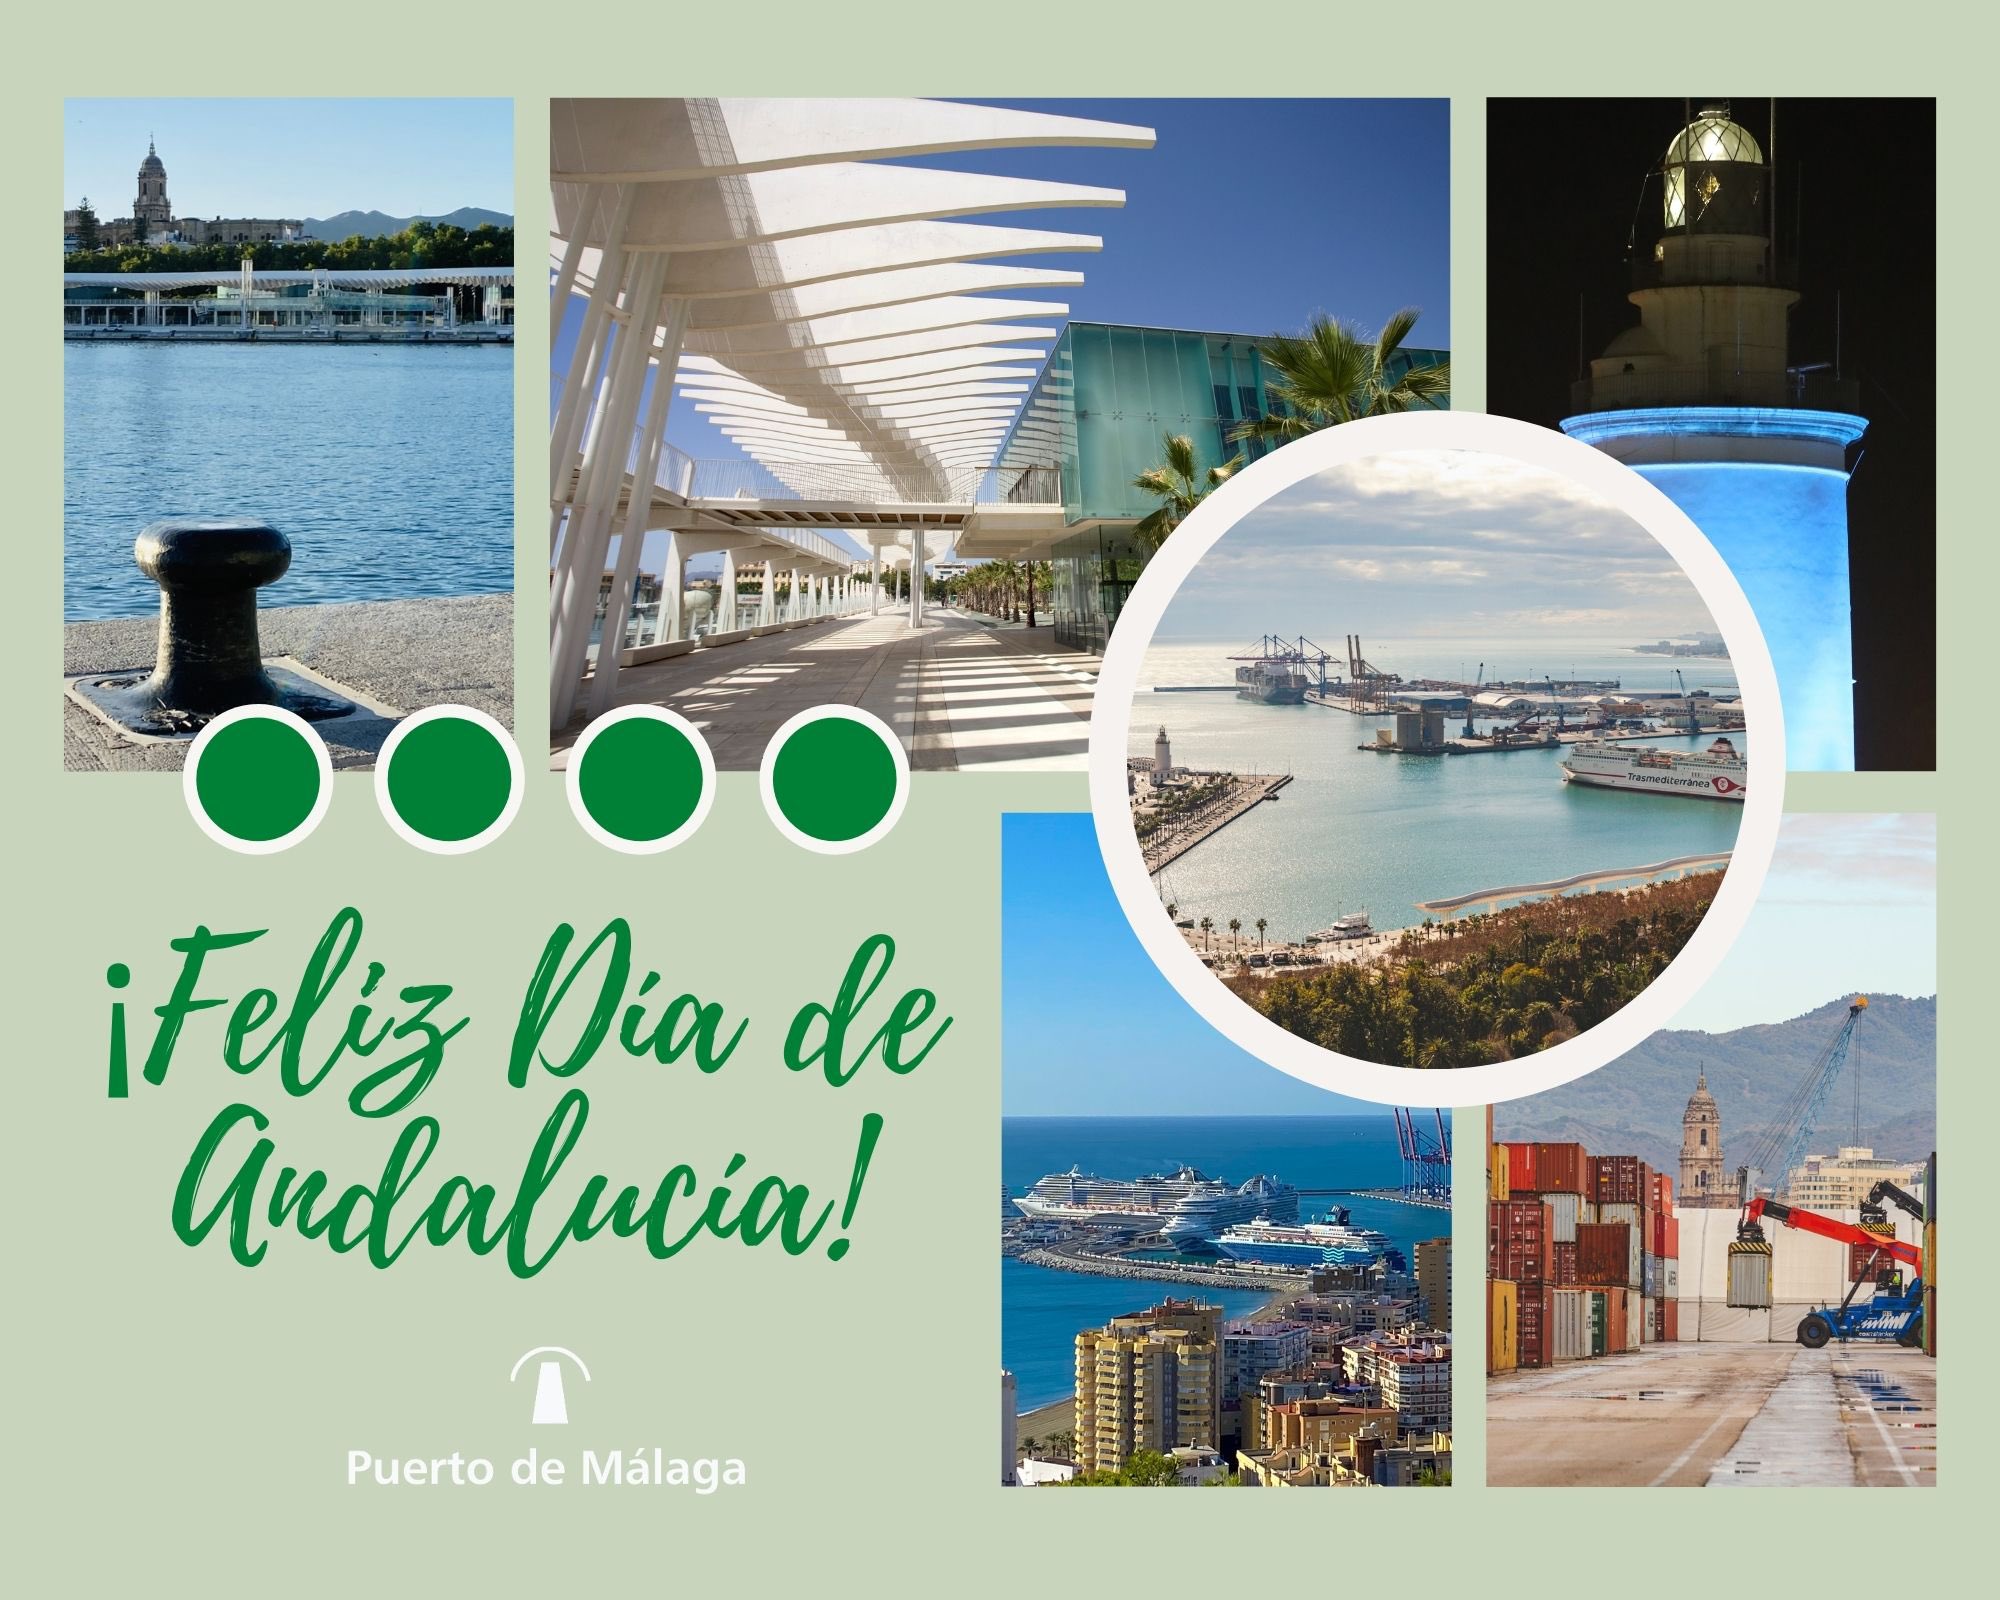 Los puertos de la región se suman a la felicitación por el Día de Andalucía